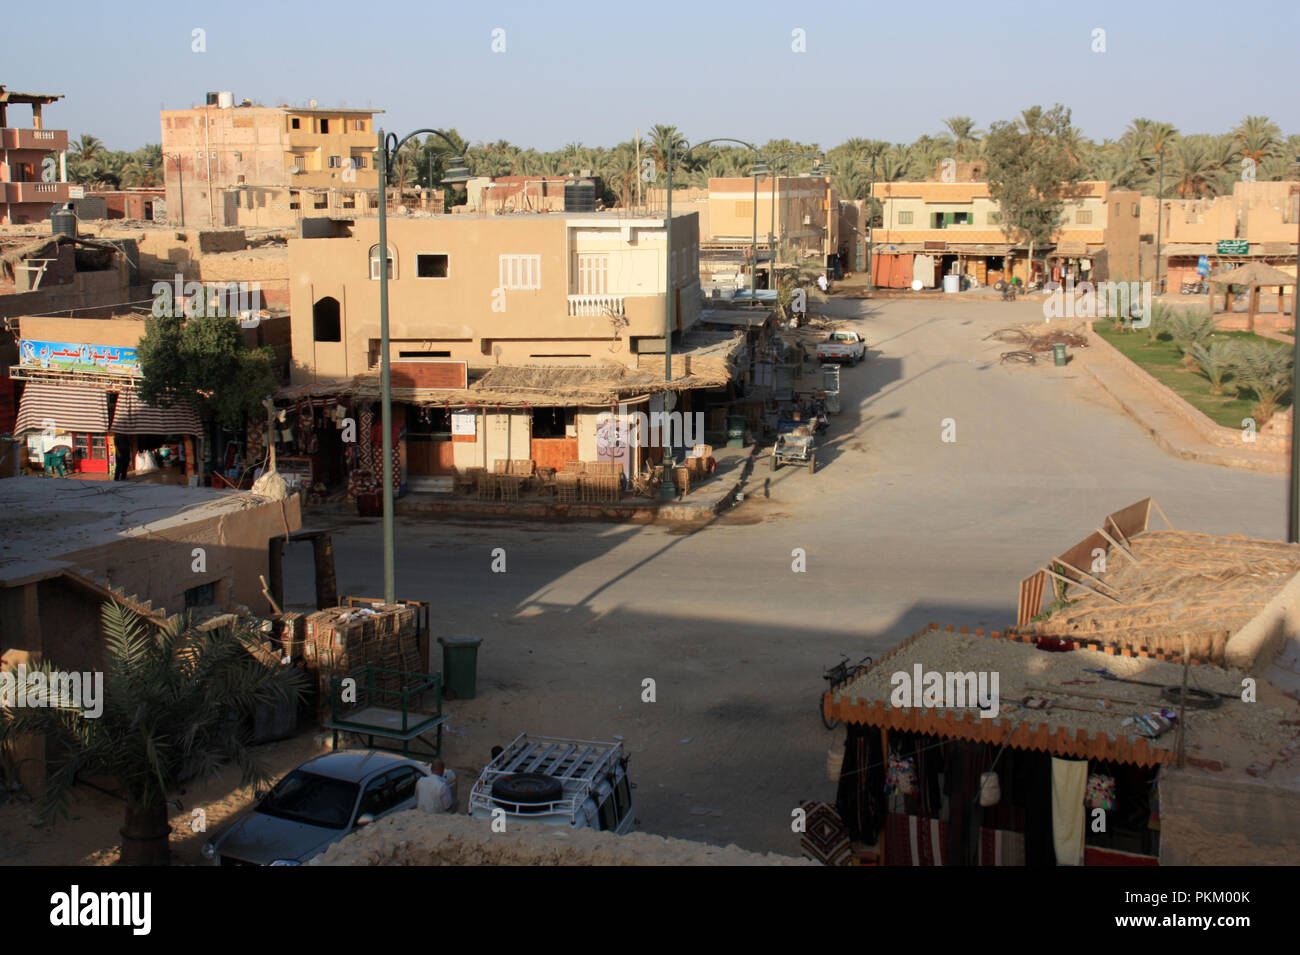 Hohe Betrachtungswinkel und der Hauptplatz in Siwa, Ägypten, mit Geschäften, Läden und Verkaufsständen während der gebetszeit Stockfoto